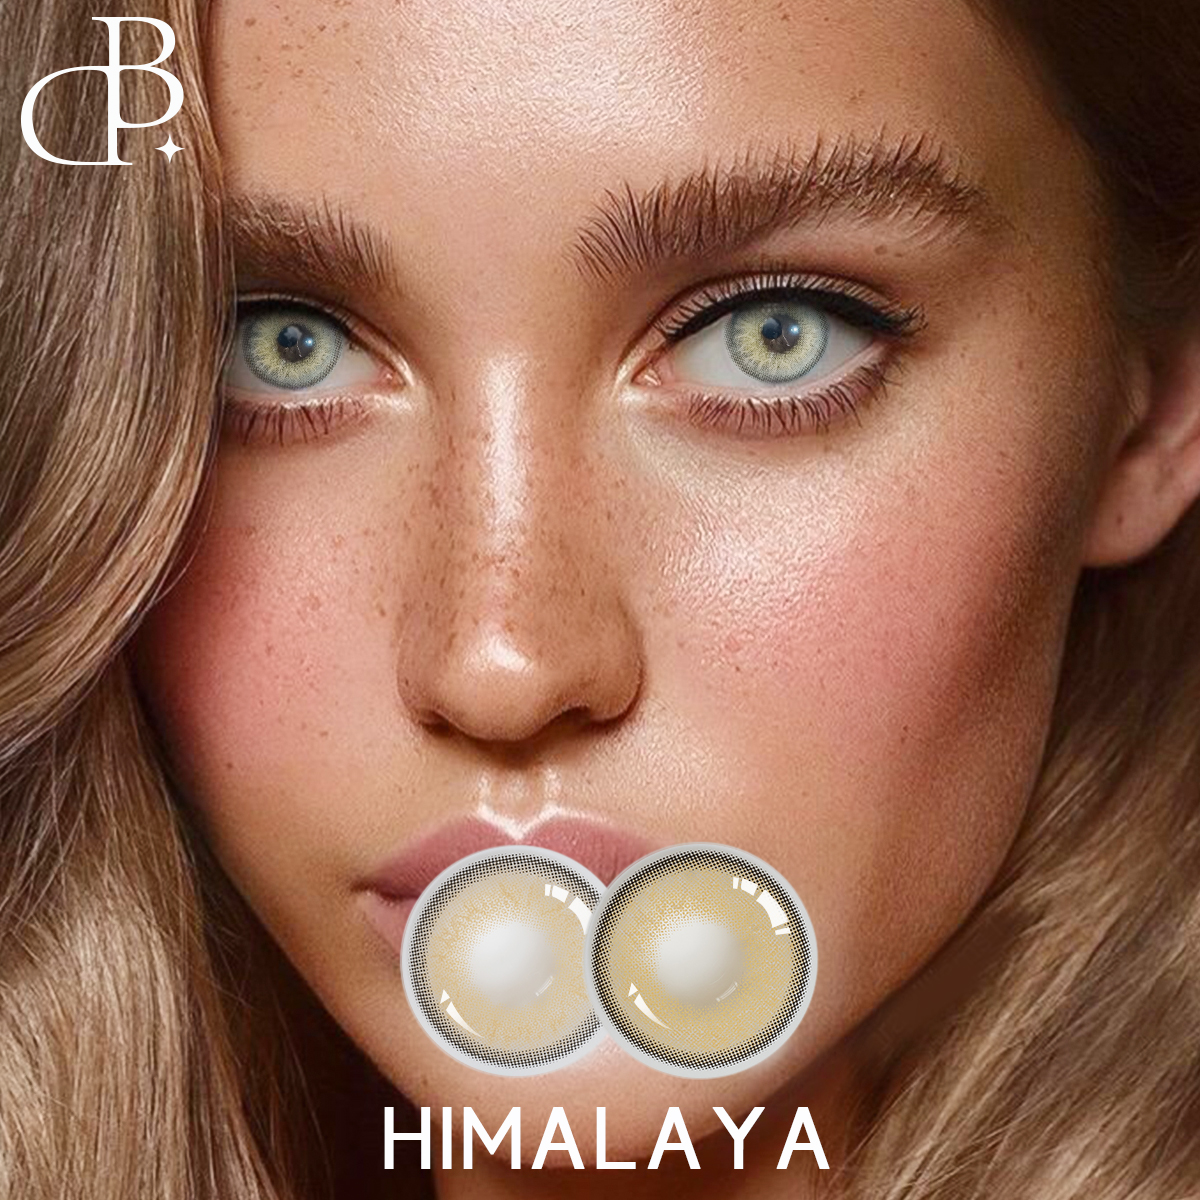 HIMALAYA pogranda kolora kontaktlenso Super Natura aspekto 14.0mm koreaj molaj kosmetikaj koloraj kontaktoj freŝaton kontaktlensoj